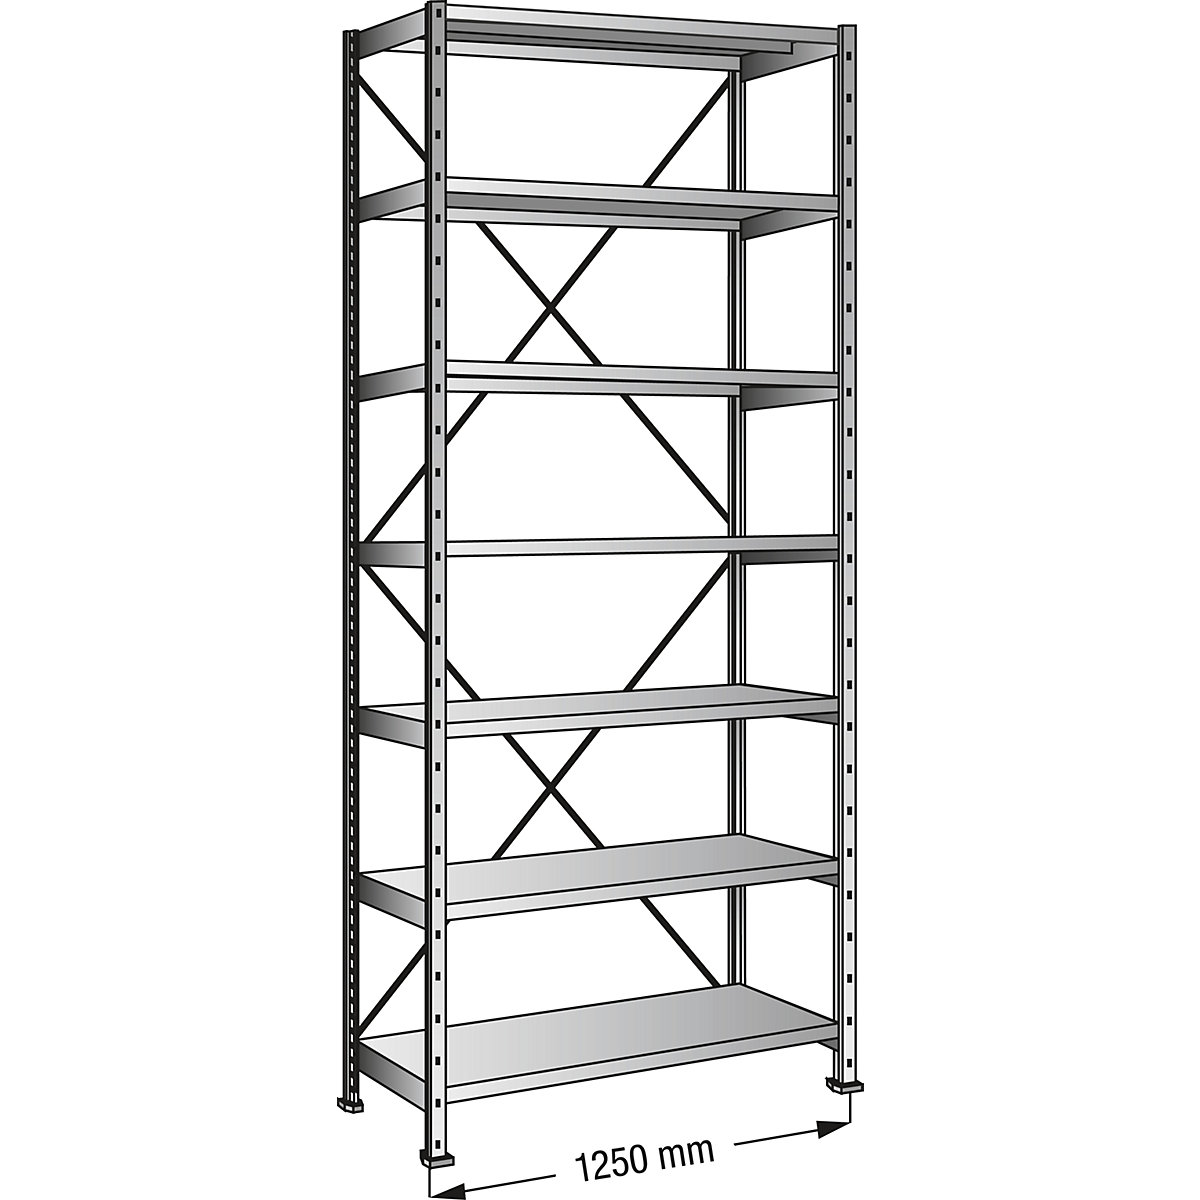 Boltless shelving unit, zinc plated, 7 shelves, height 2640 mm, shelf width 1200 mm, depth 600 mm, standard shelf unit